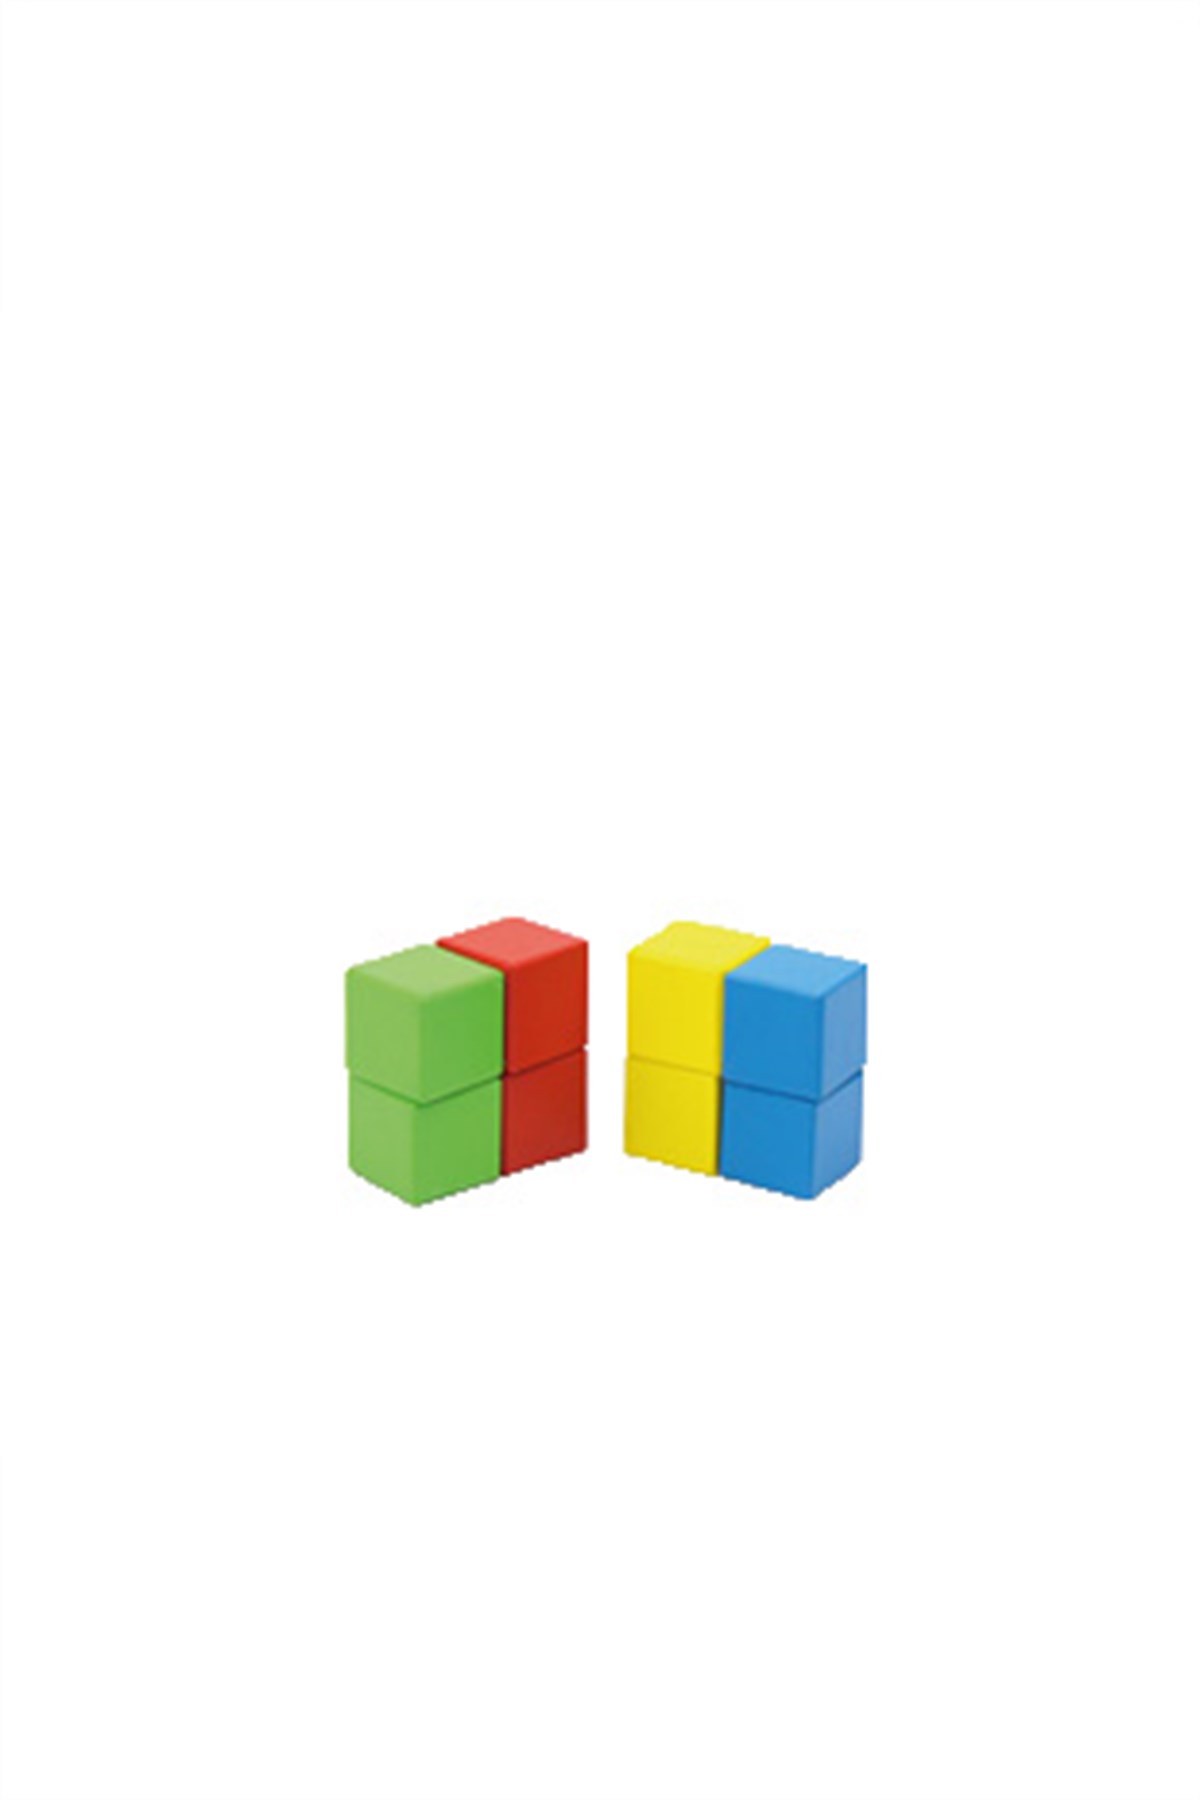 Ahşap Küpler 3*3*3, Lego ve Bloklar Fizik Tedavi ve Rehabiliyasyon  Malzemeleri, Ergoterapi Materyalleri ve Fizik Tedavi Ürünleri Üreticisi  Işık Yayın Oyuncak